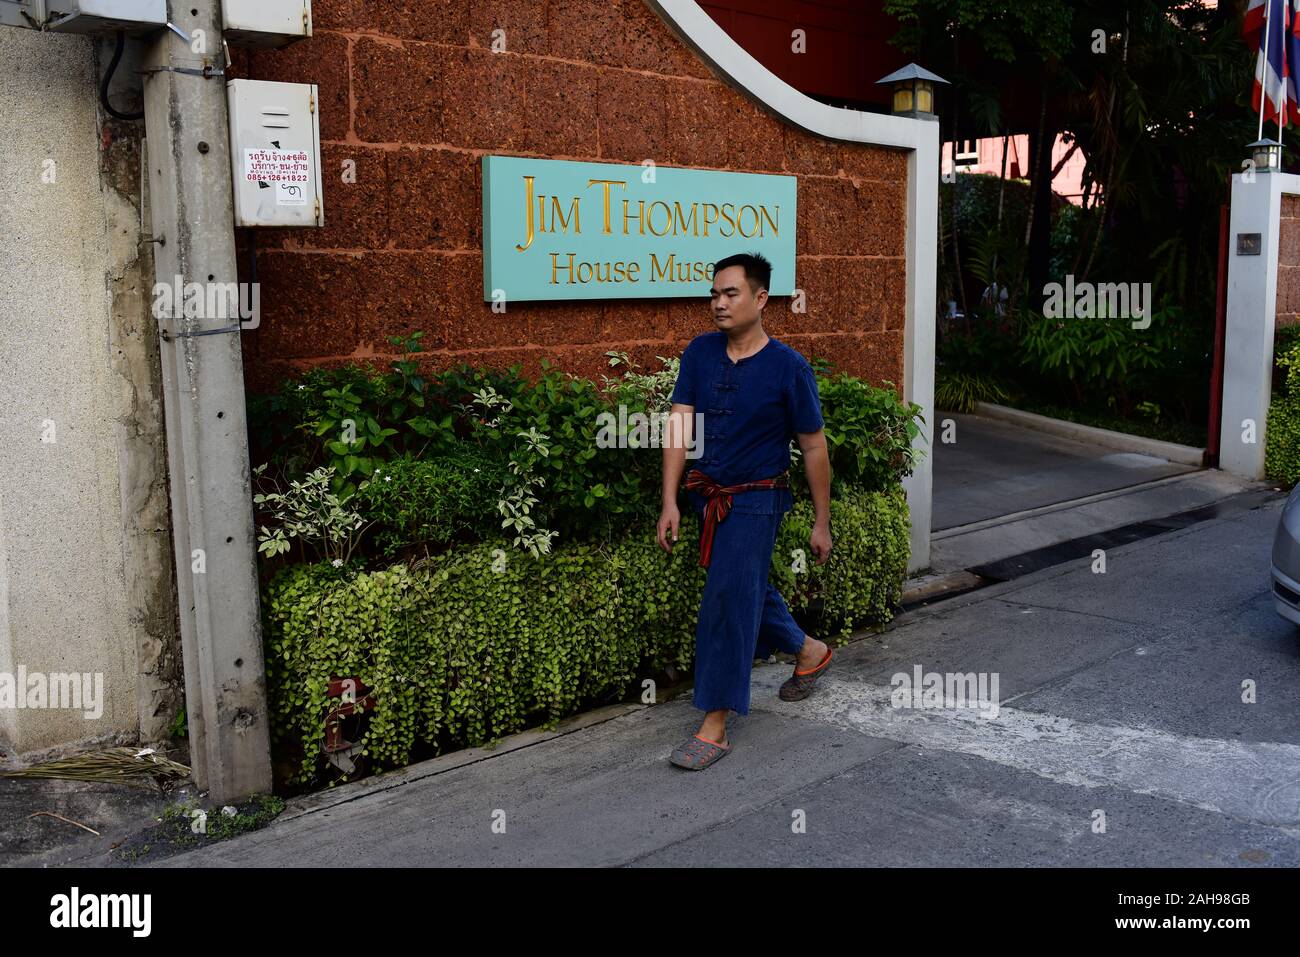 Traditionelle seidenweber von Baan krua Gemeinschaft in Bangkok, Thailand. Diese Cham muslimische Gemeinschaft zusammen mit Jim Thompson. Stockfoto